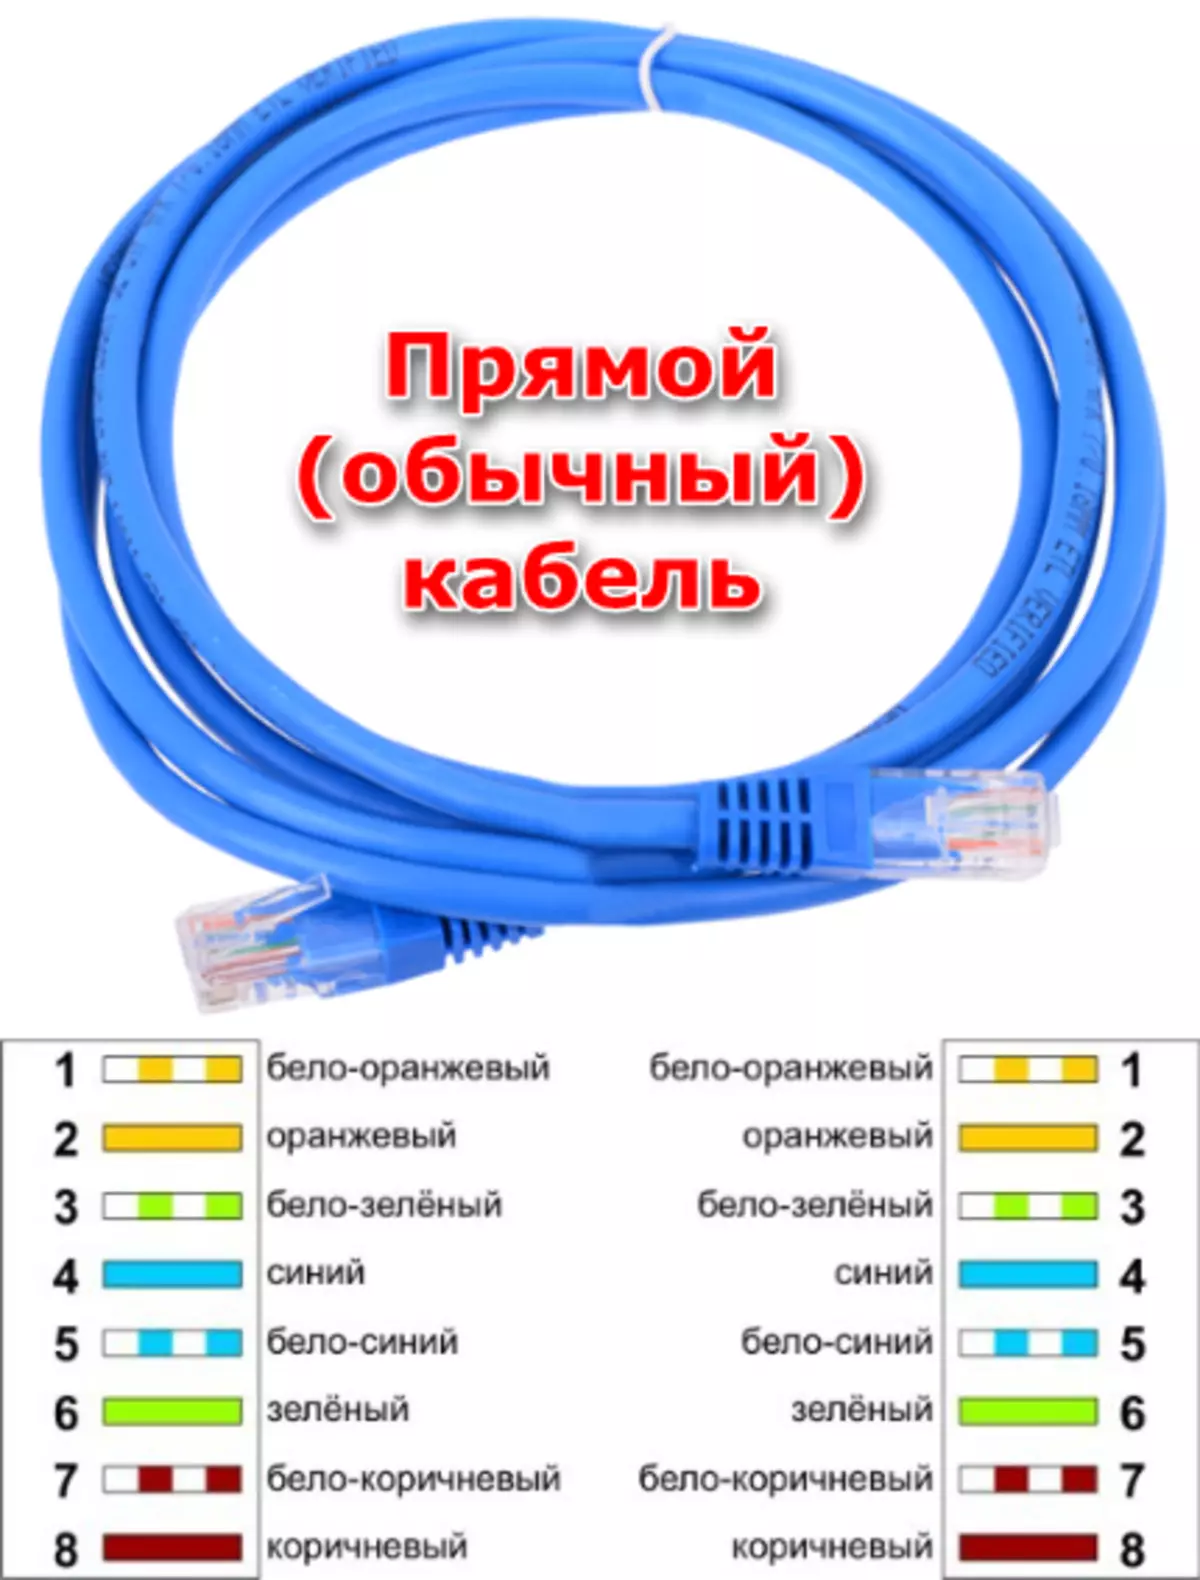 cable de red de conexión directa para crear una red local